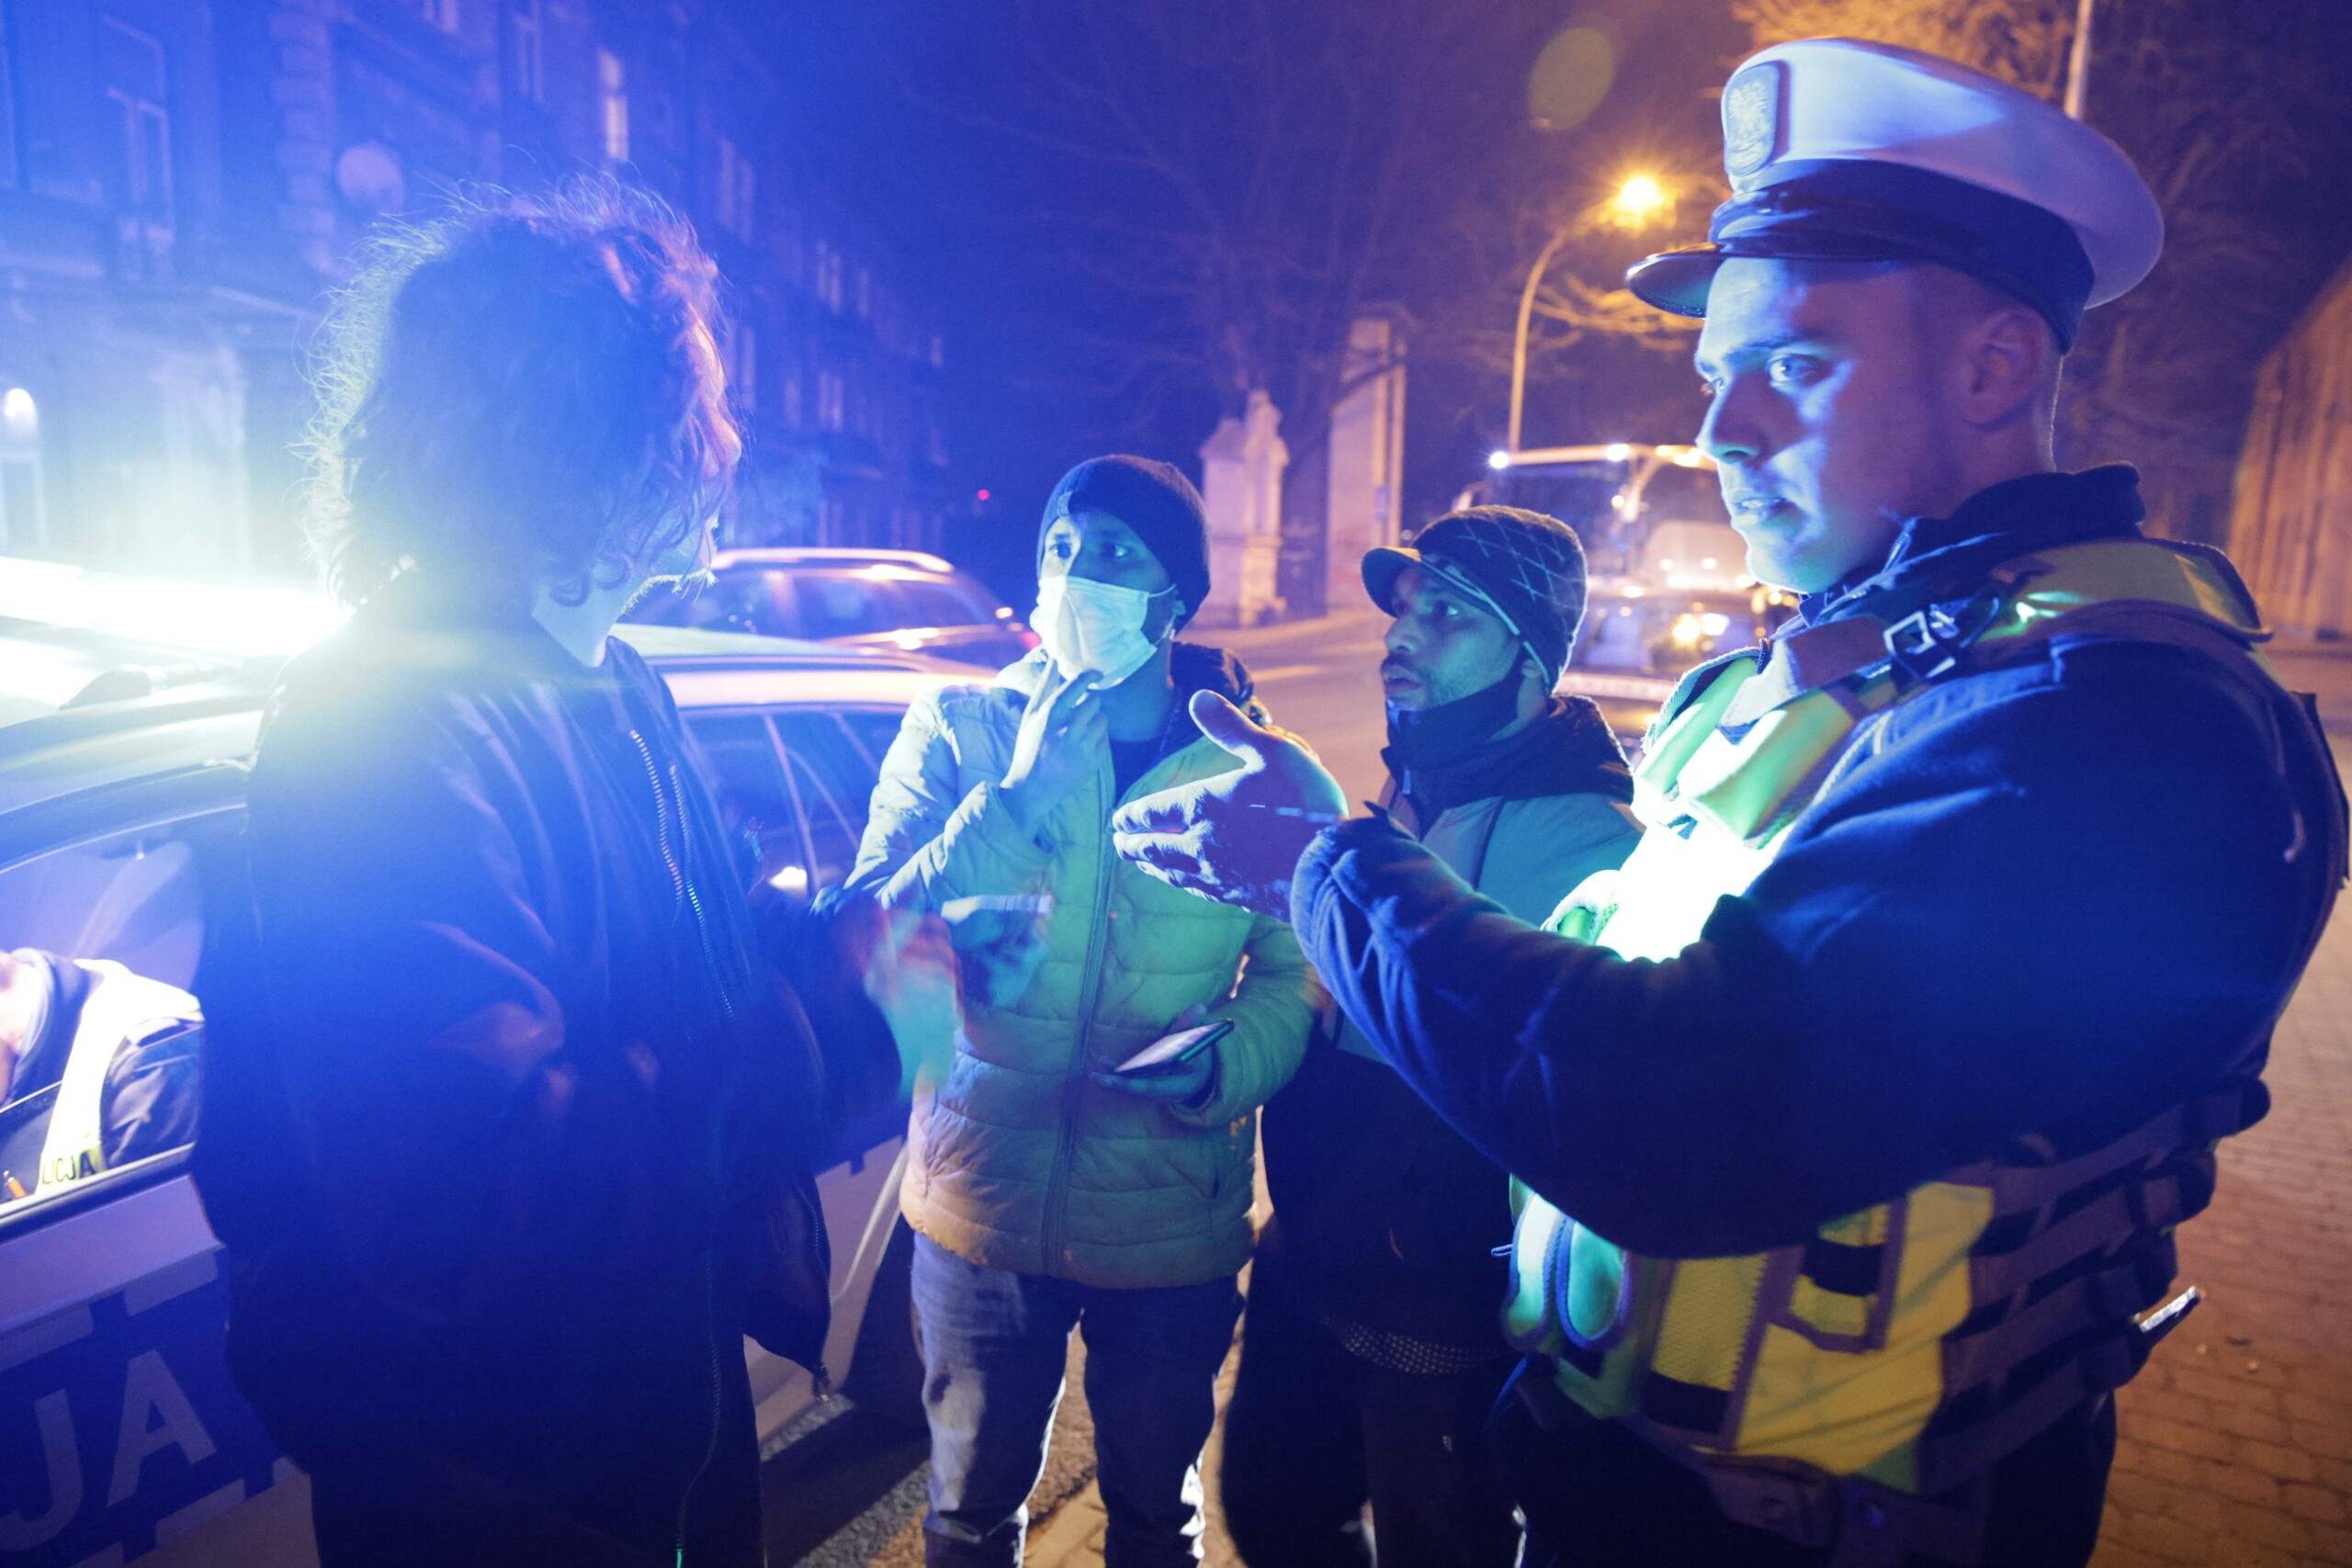 Policjant rozmawia z ludźmi